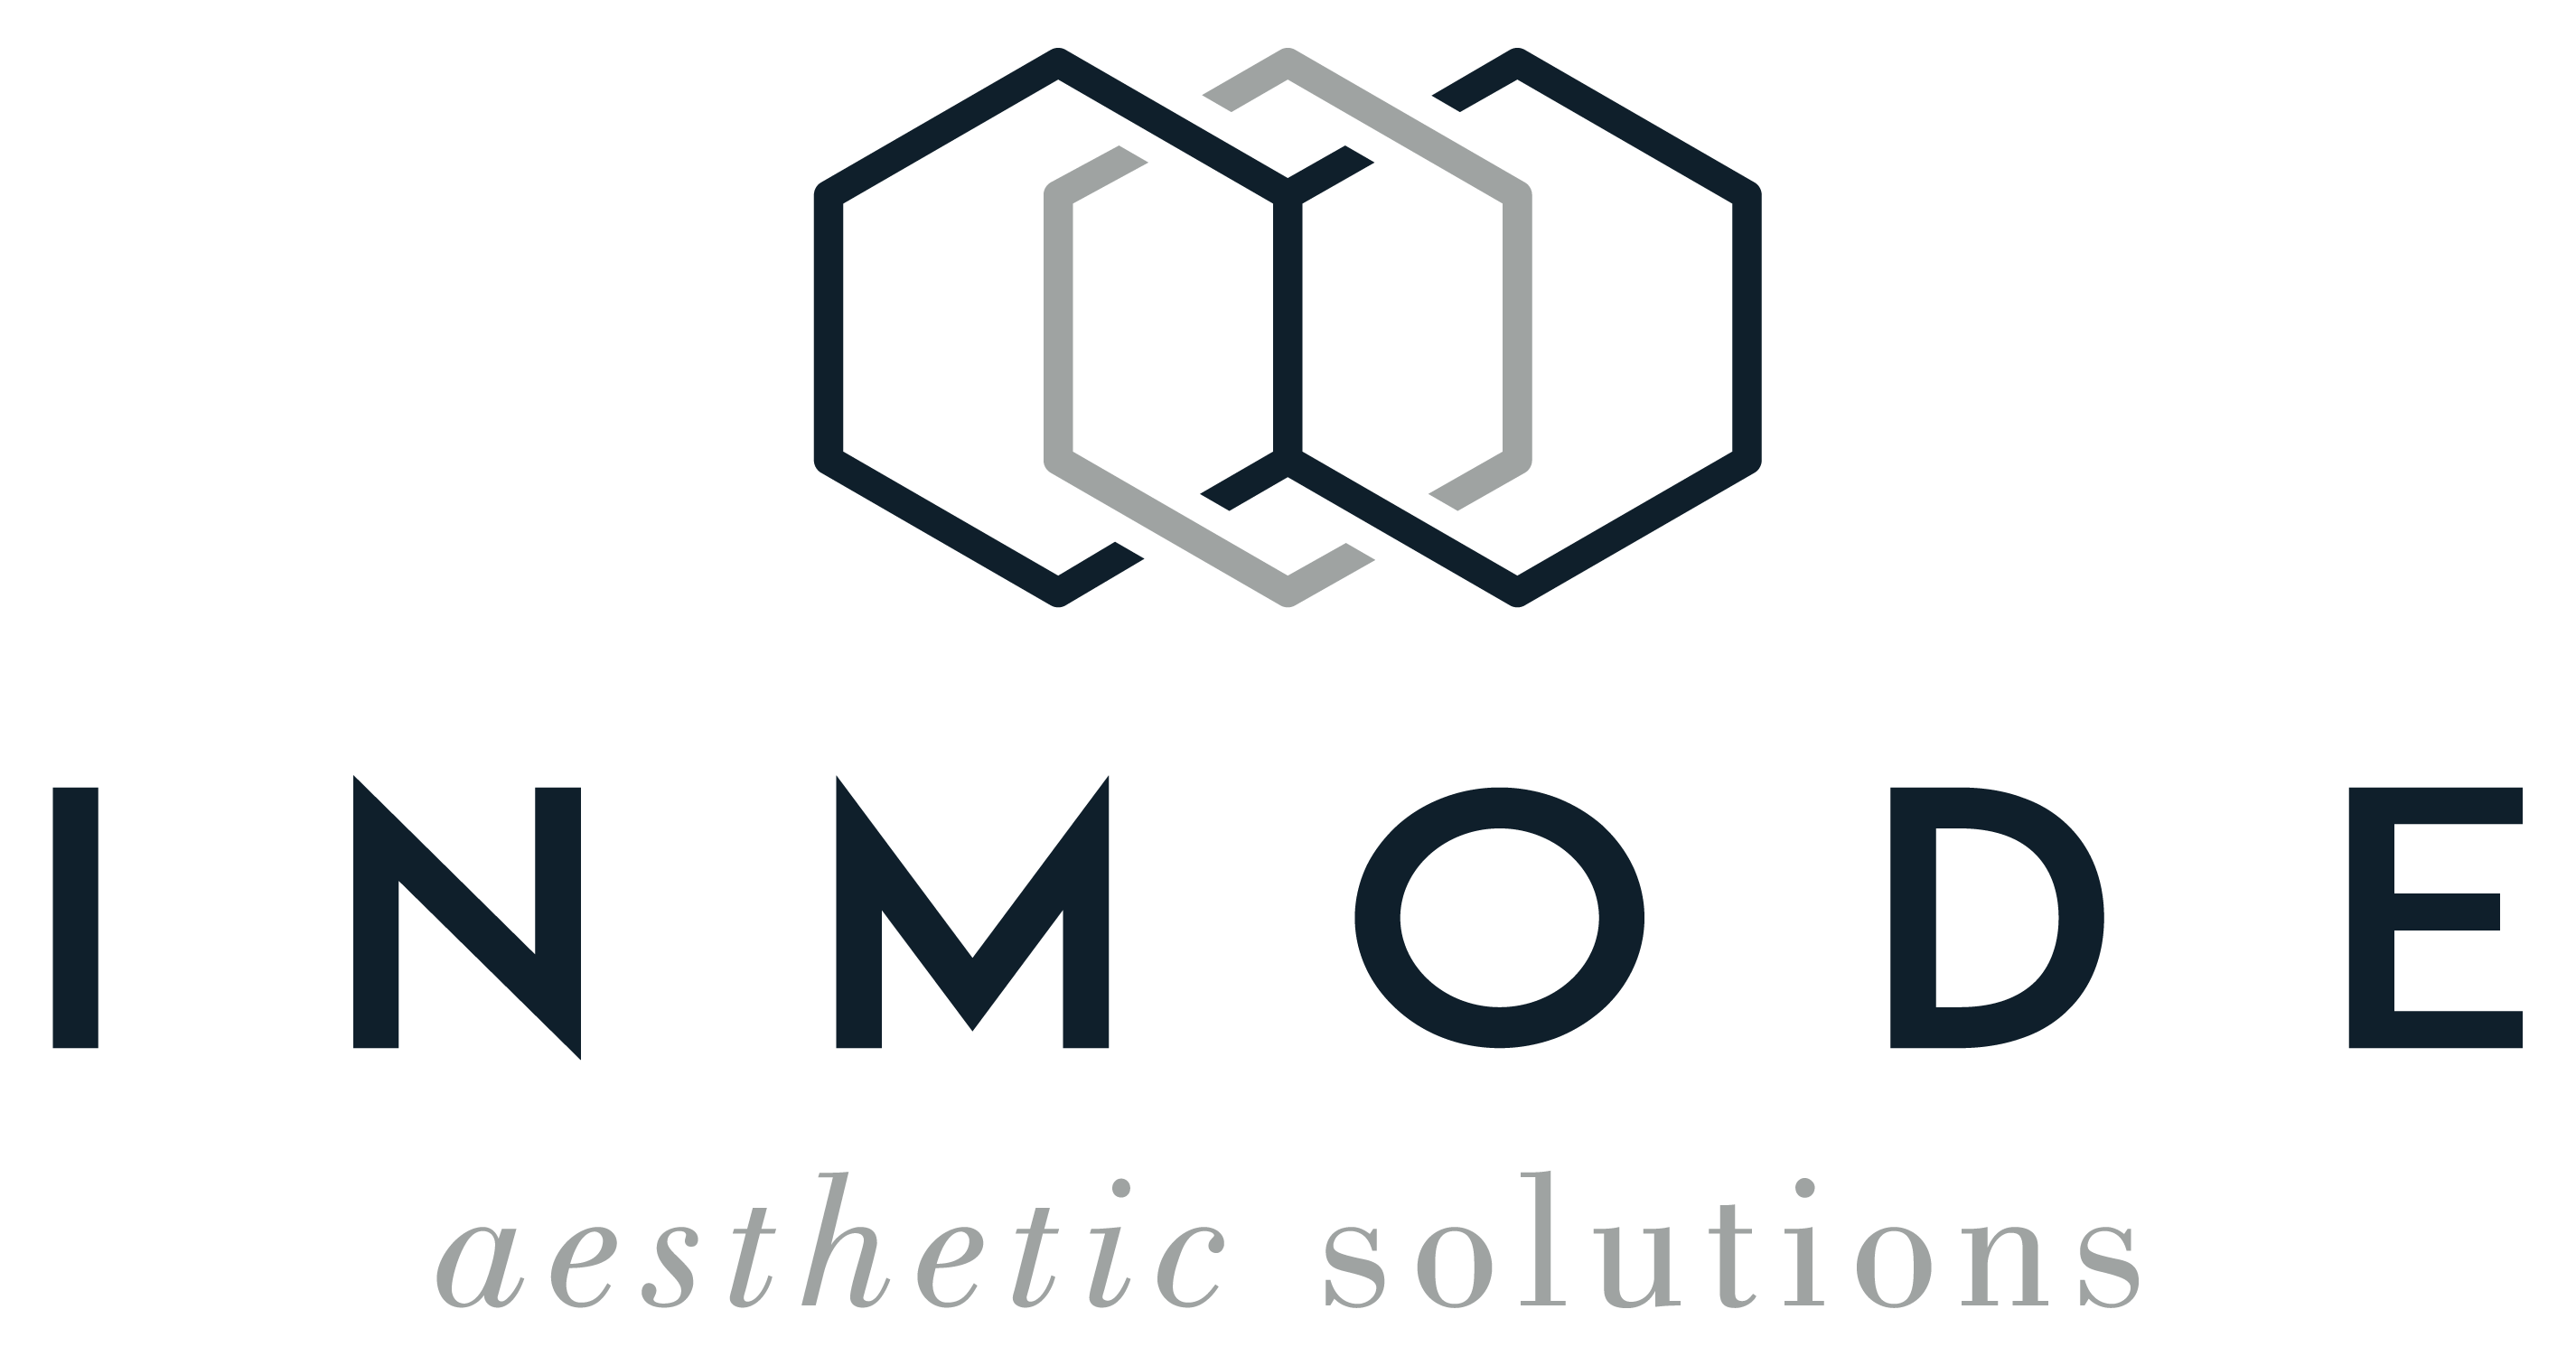 CA014-InMode-Logo-CMYK-LR.png